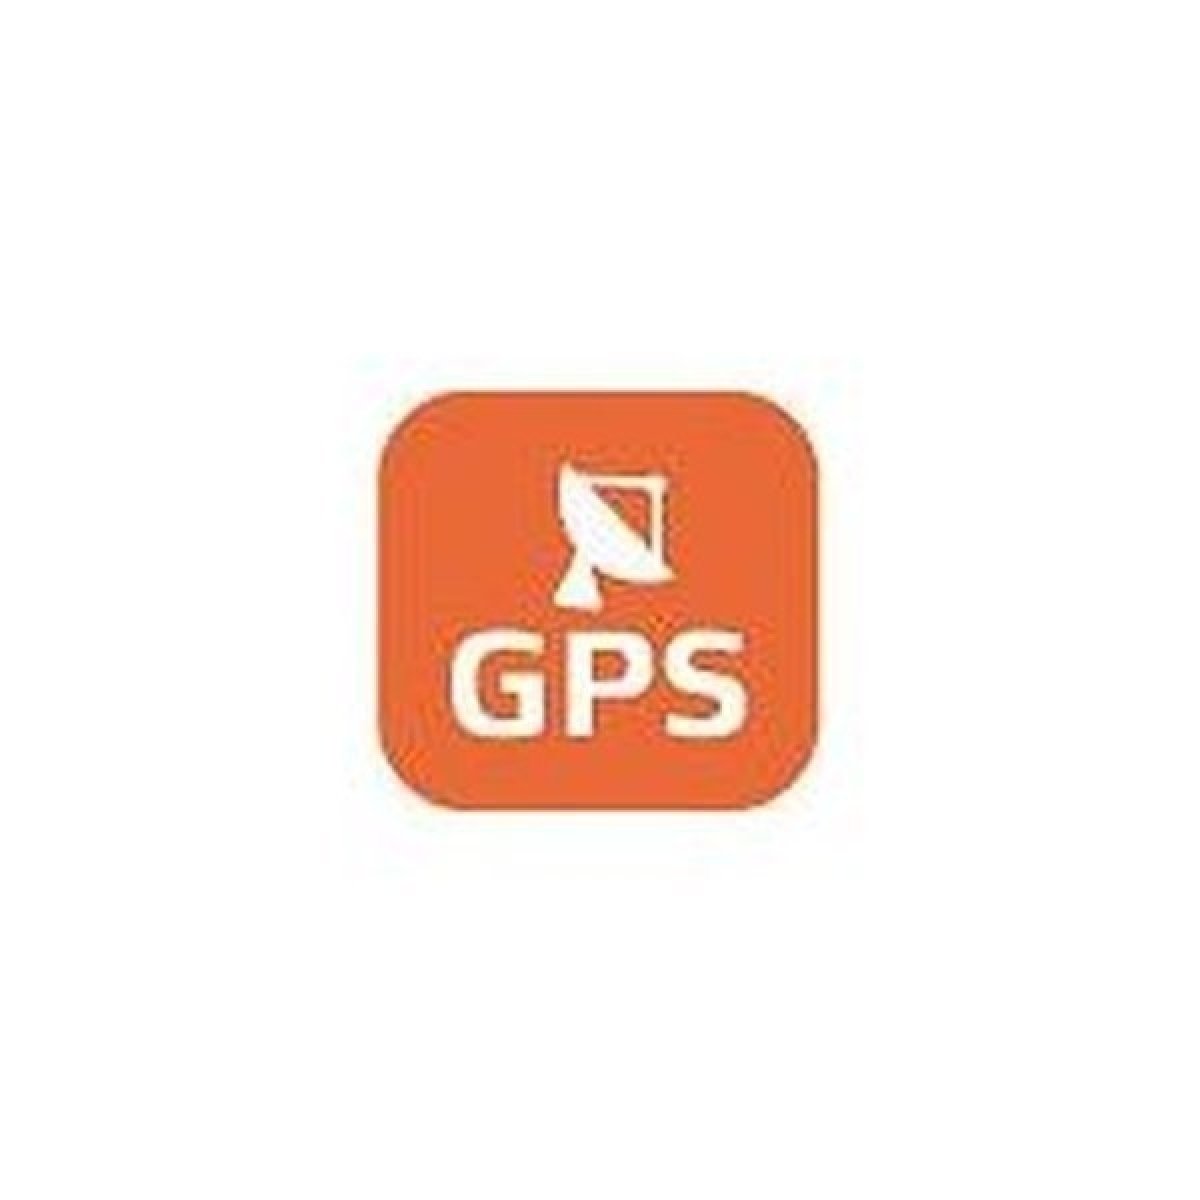 Integrovaná GPS pro zaznamenání polohy a rychlosti